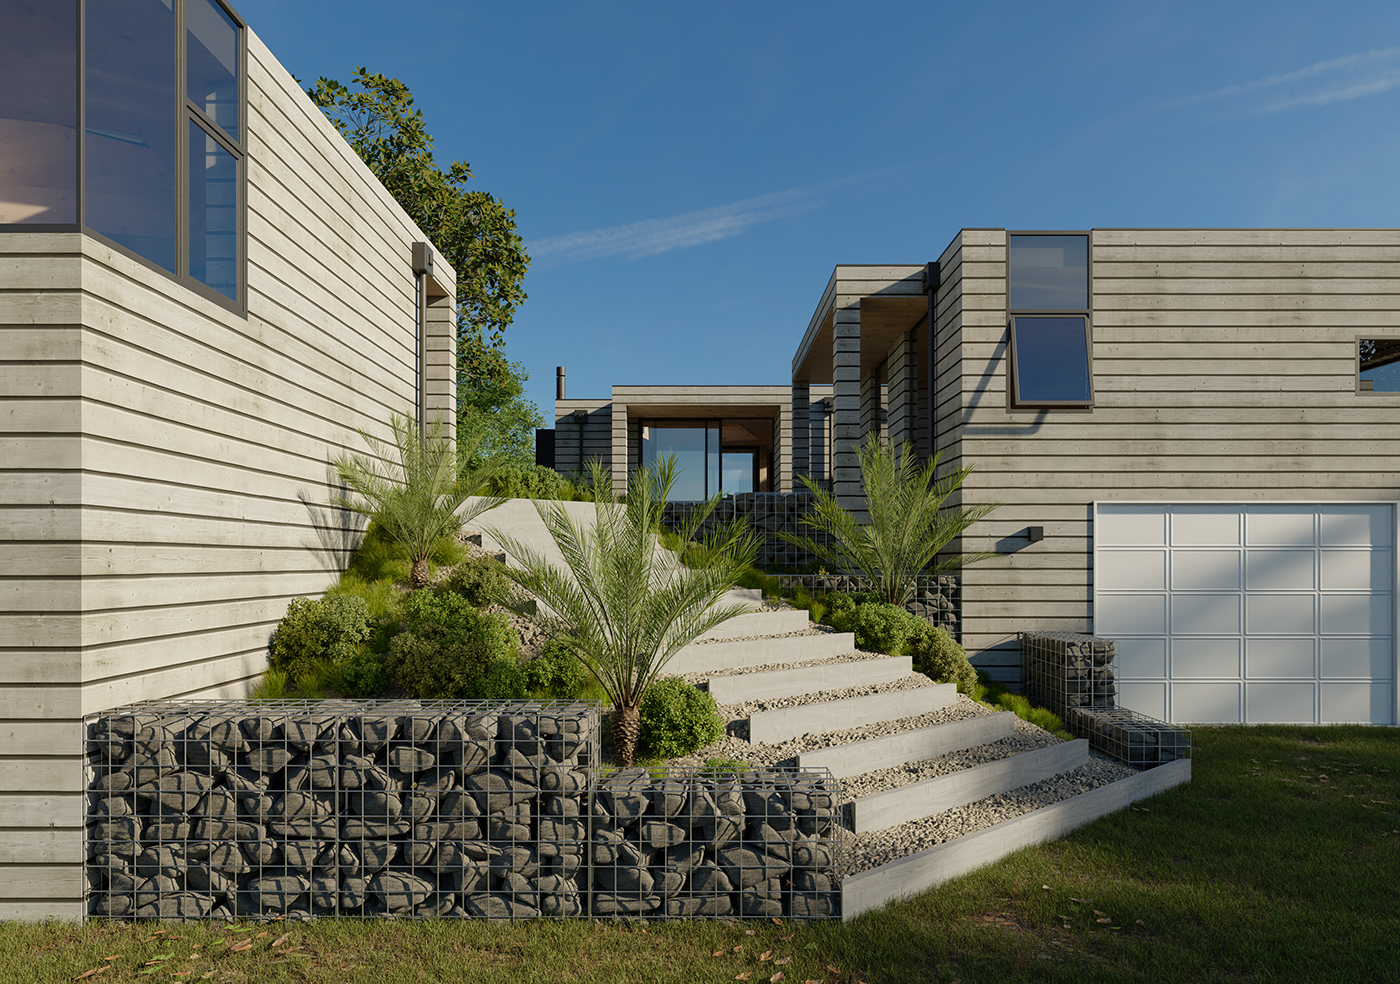 Villa architecture Render visualization modern exterior architectural design archviz 3ds max CGI